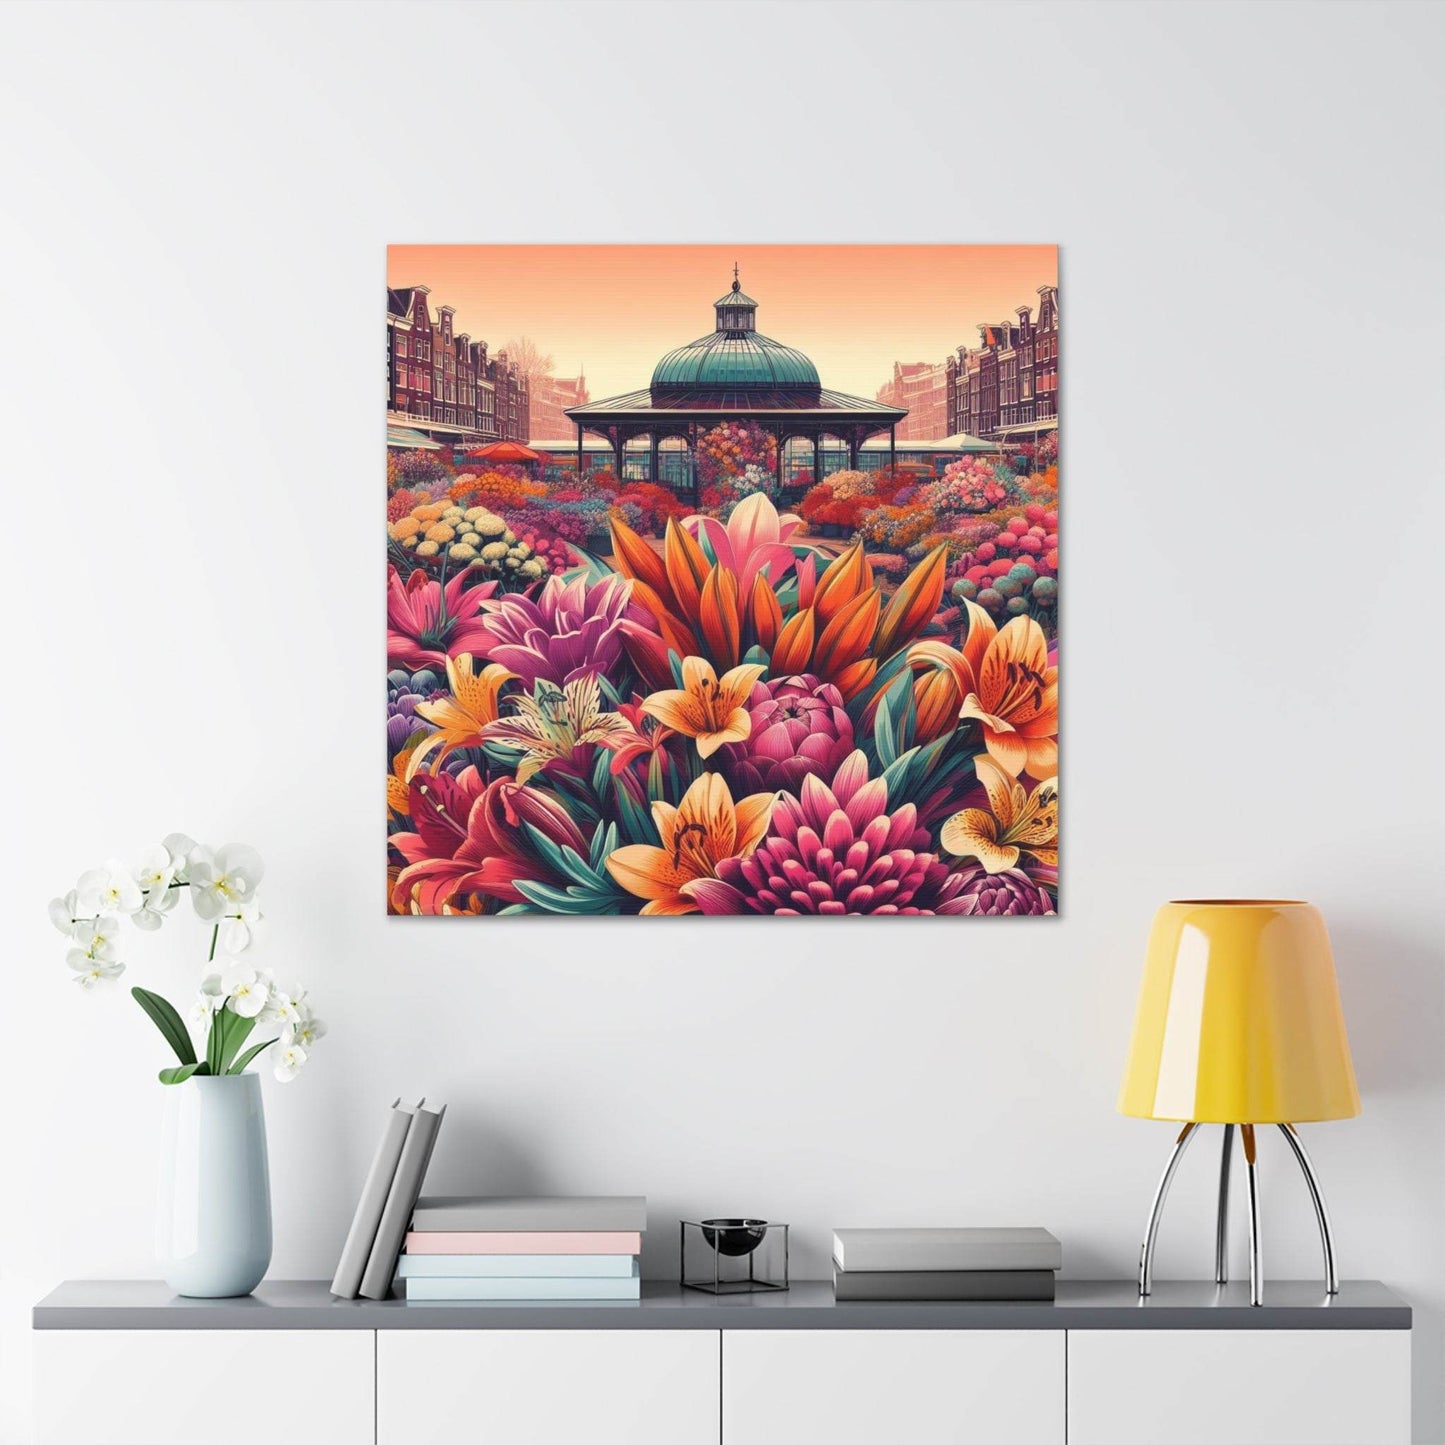 flower market poster, amsterdam poster